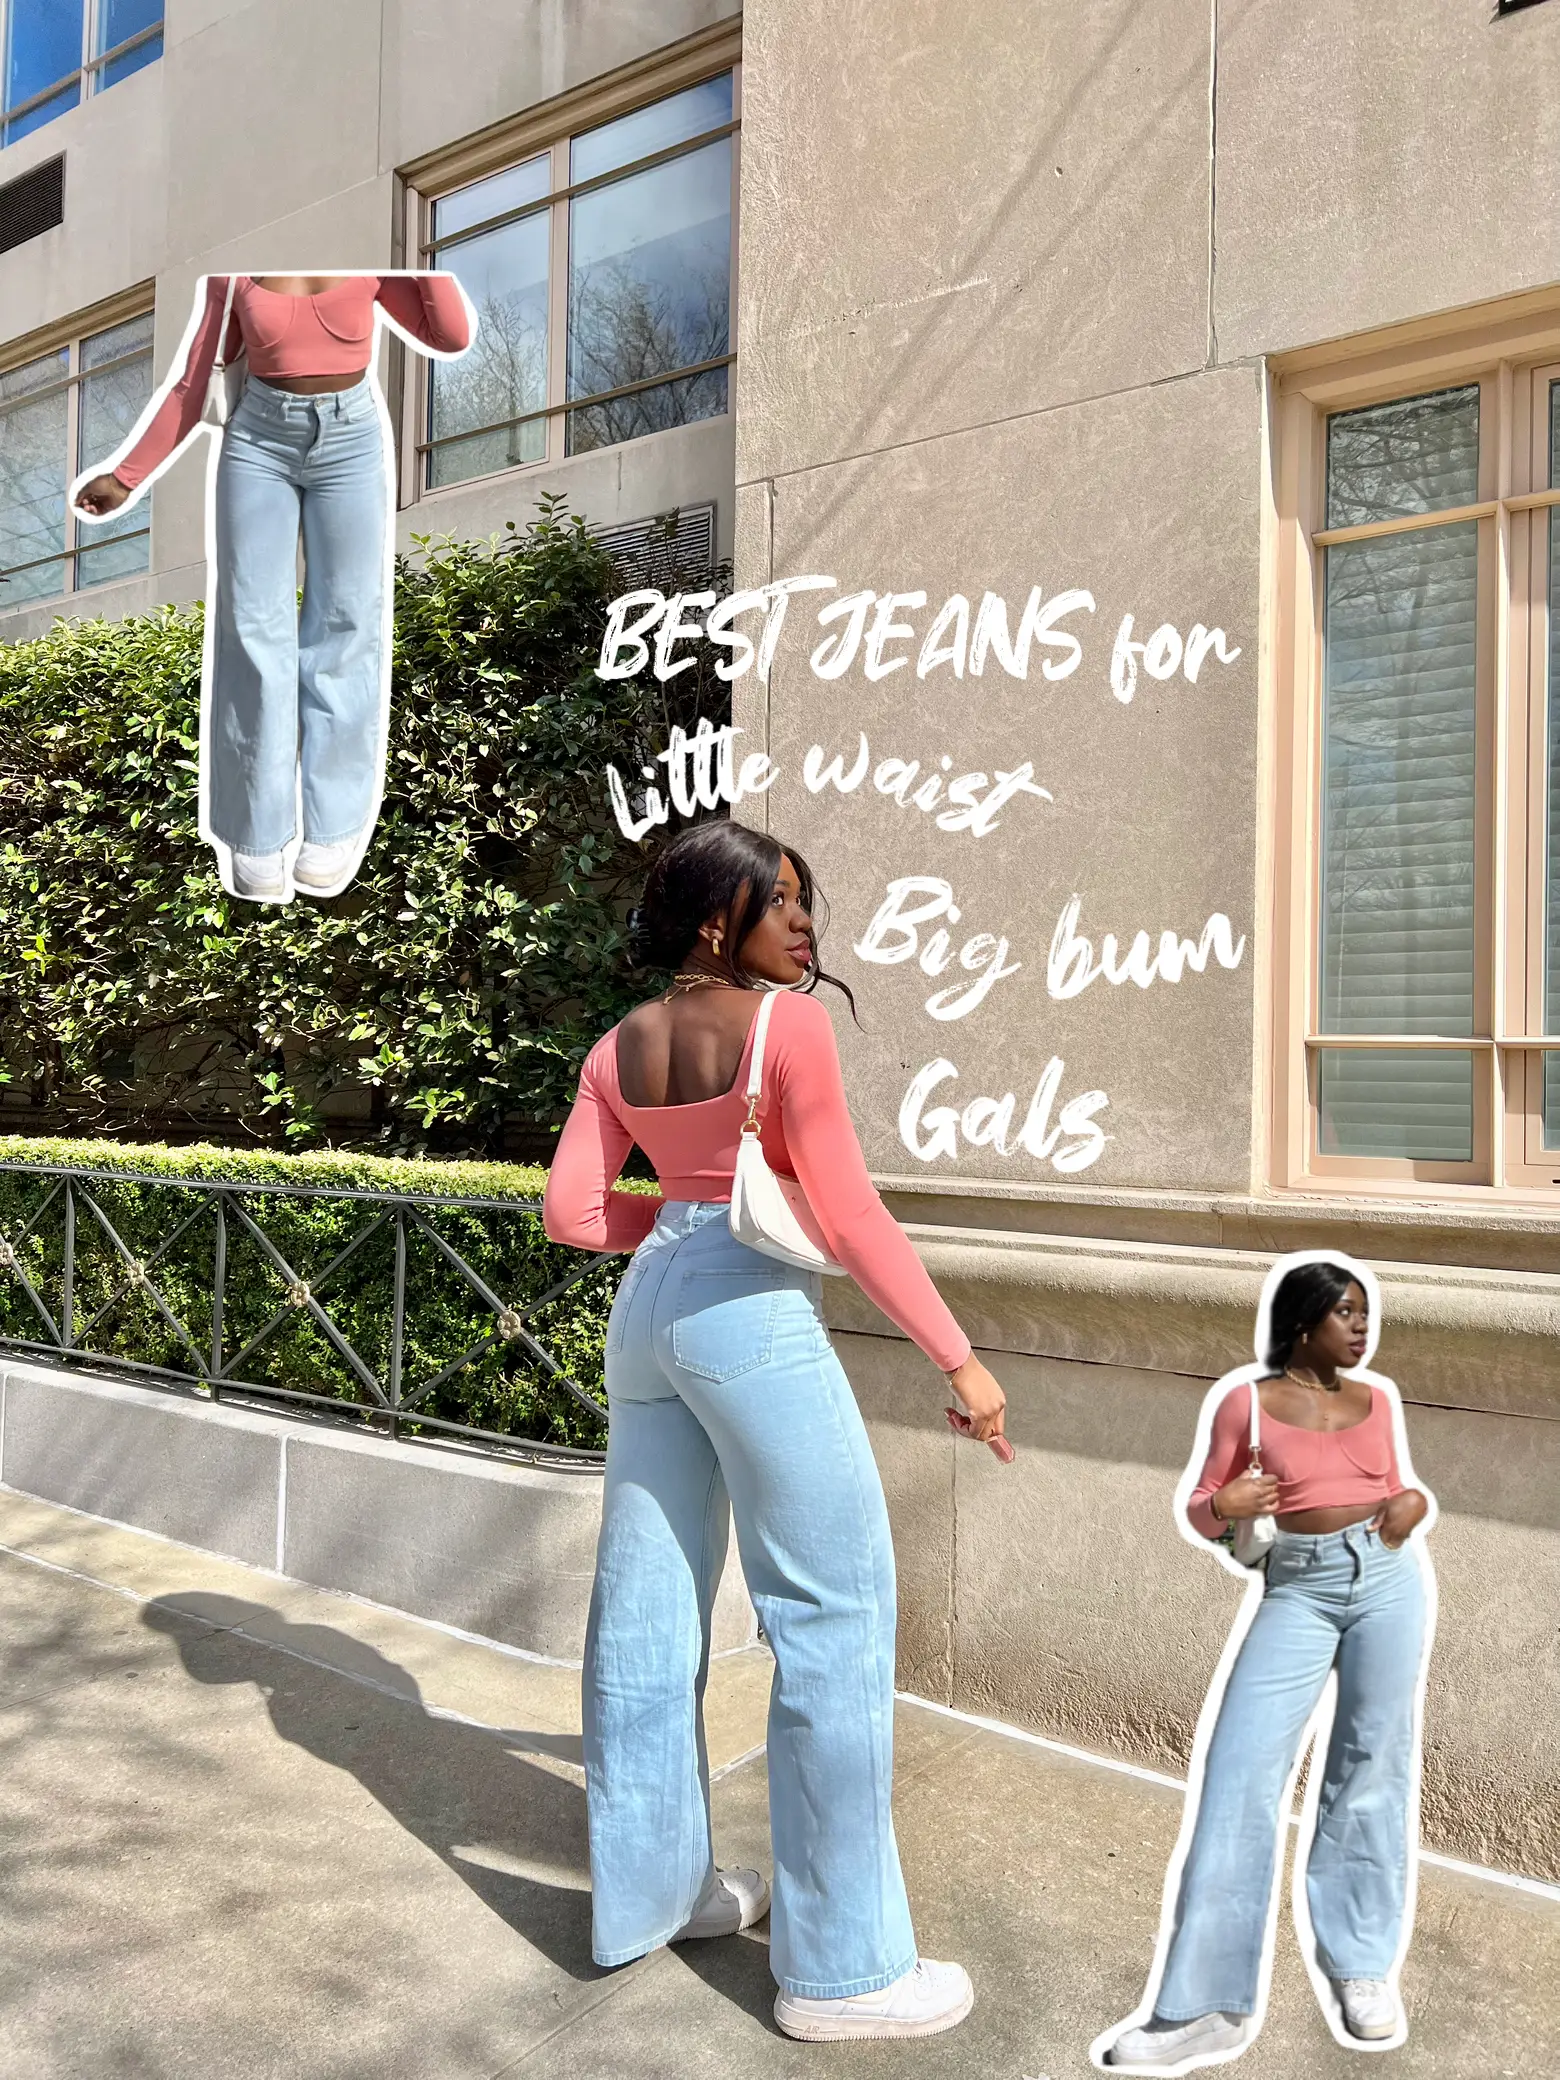 Best Jeans for little waist, big bum🍑